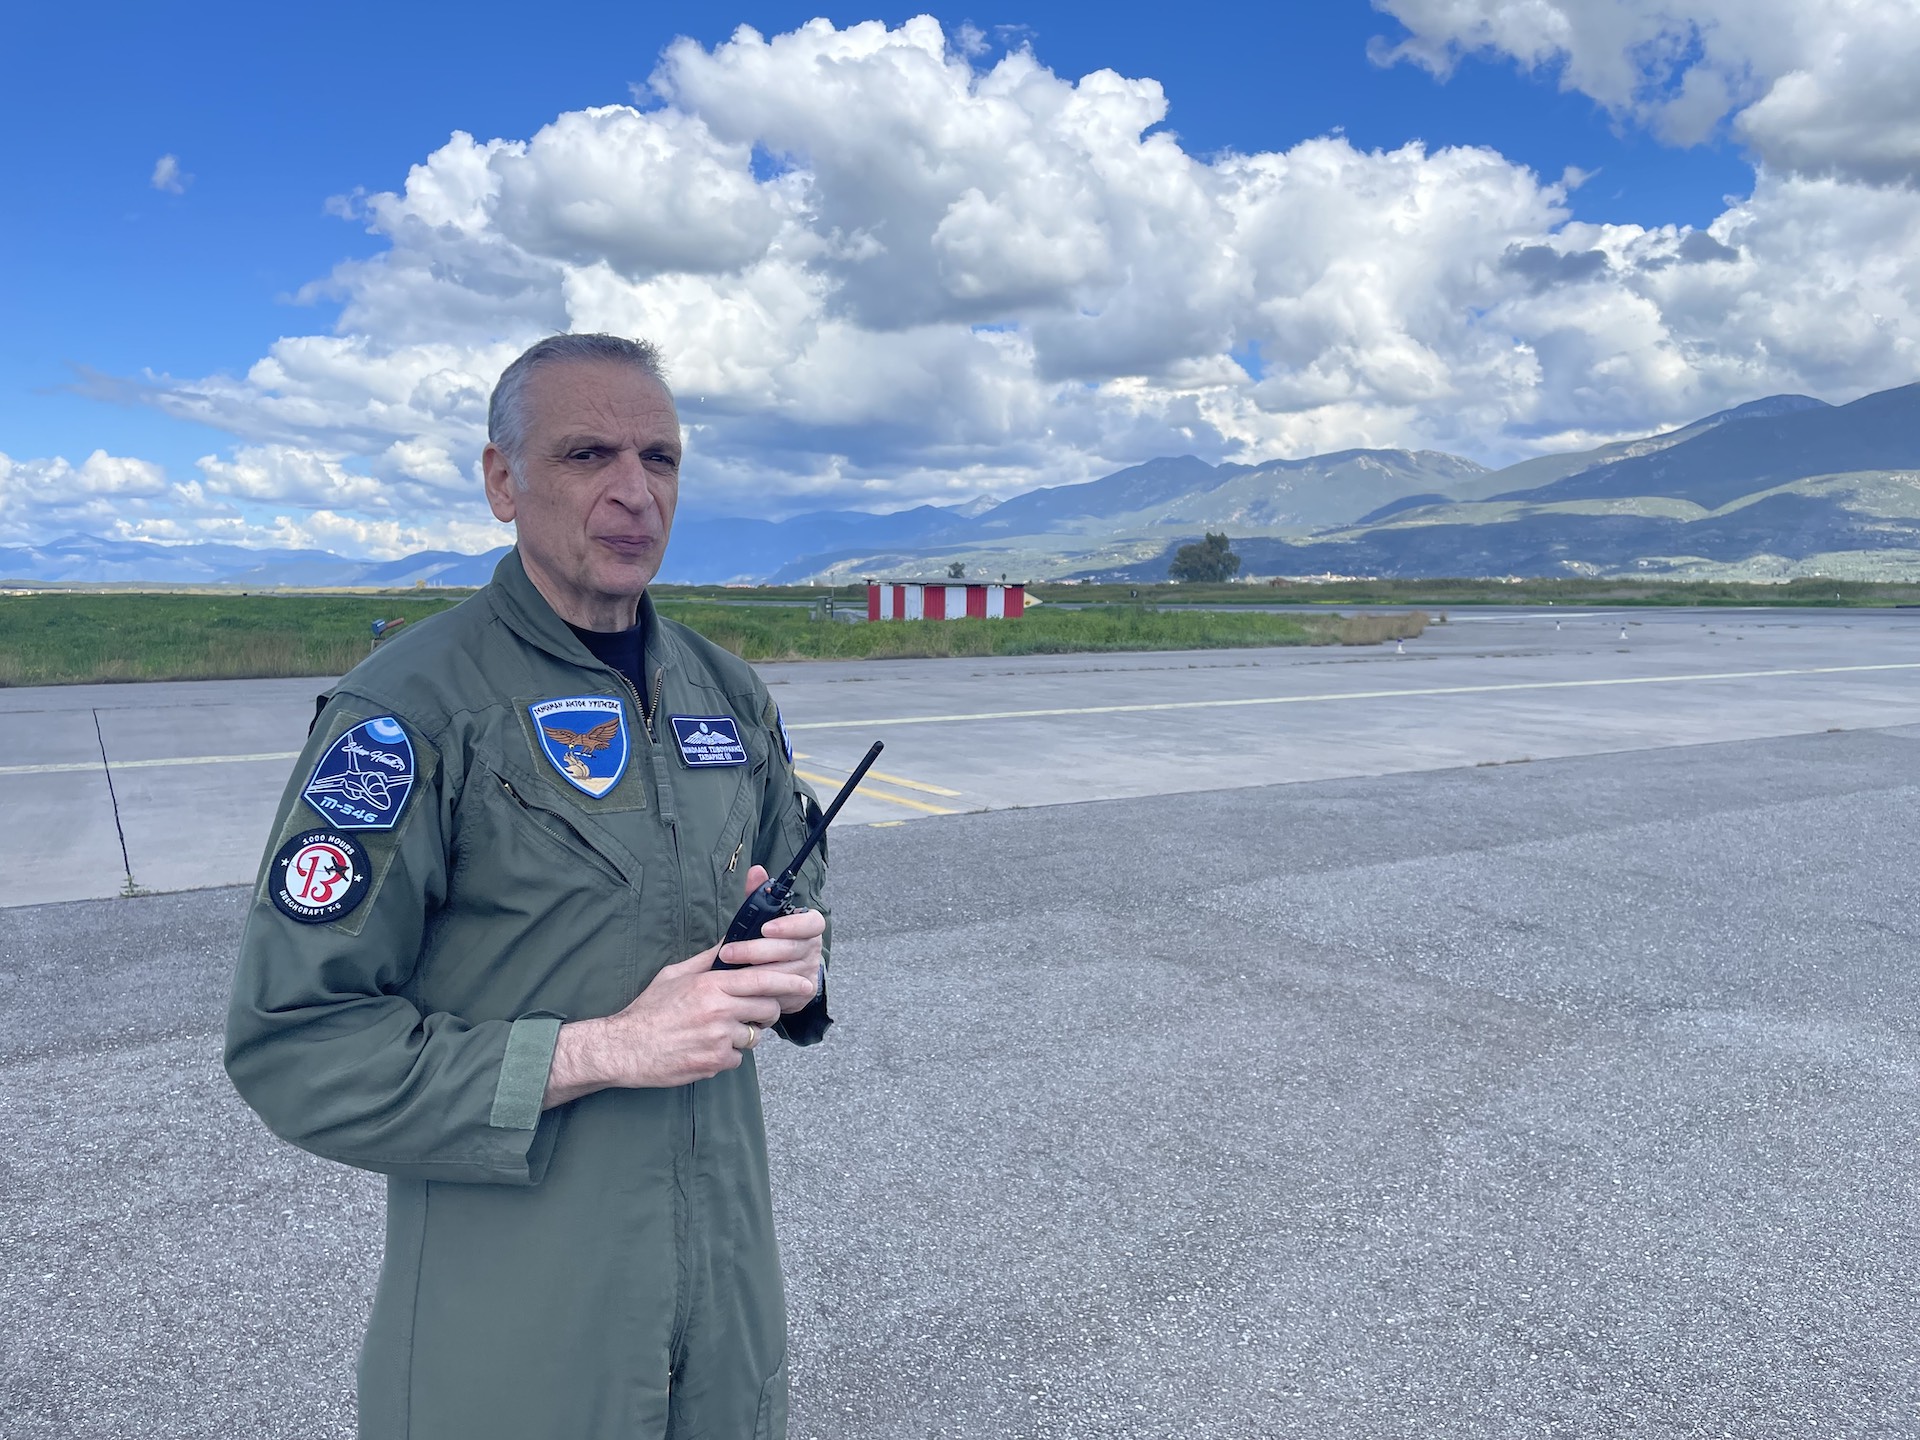 Η «Κ» στα νέα εκπαιδευτικά της Πολεμικής Αεροπορίας – Η πρώτη σειρά Ικάρων στα Μ-346-1